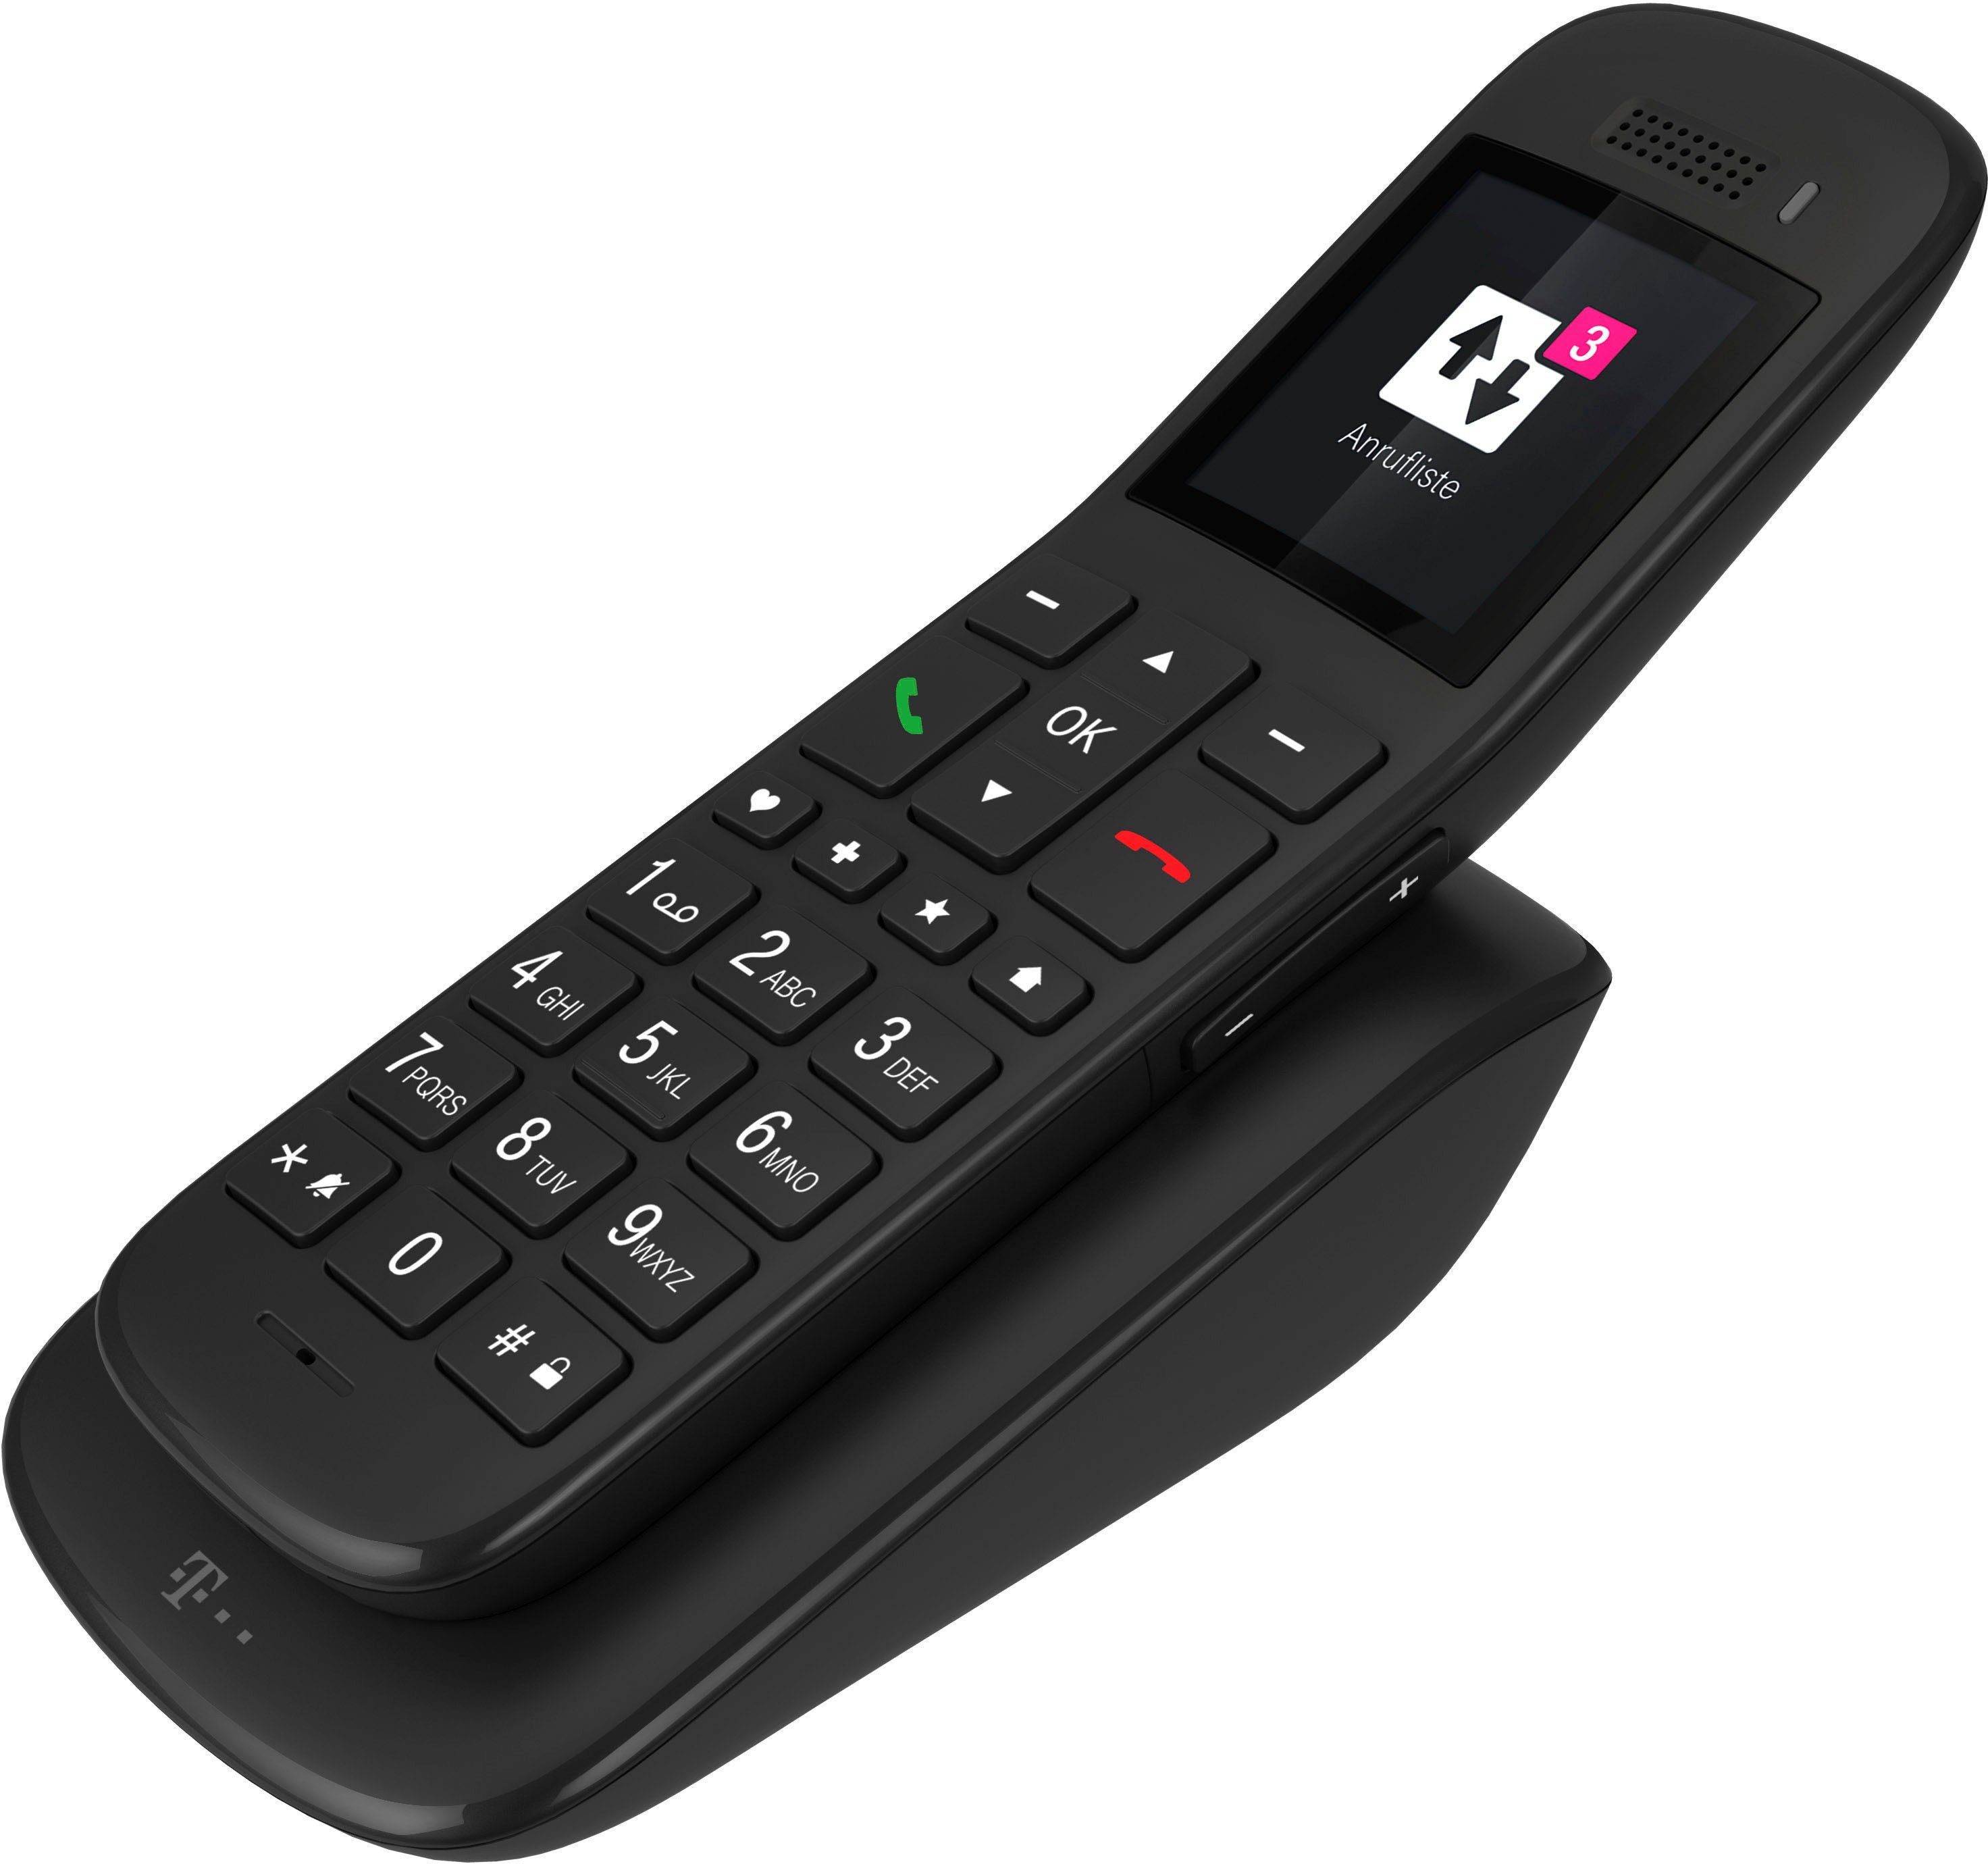 Telekom Speedphone 32 DECT-Telefon online kaufen | OTTO